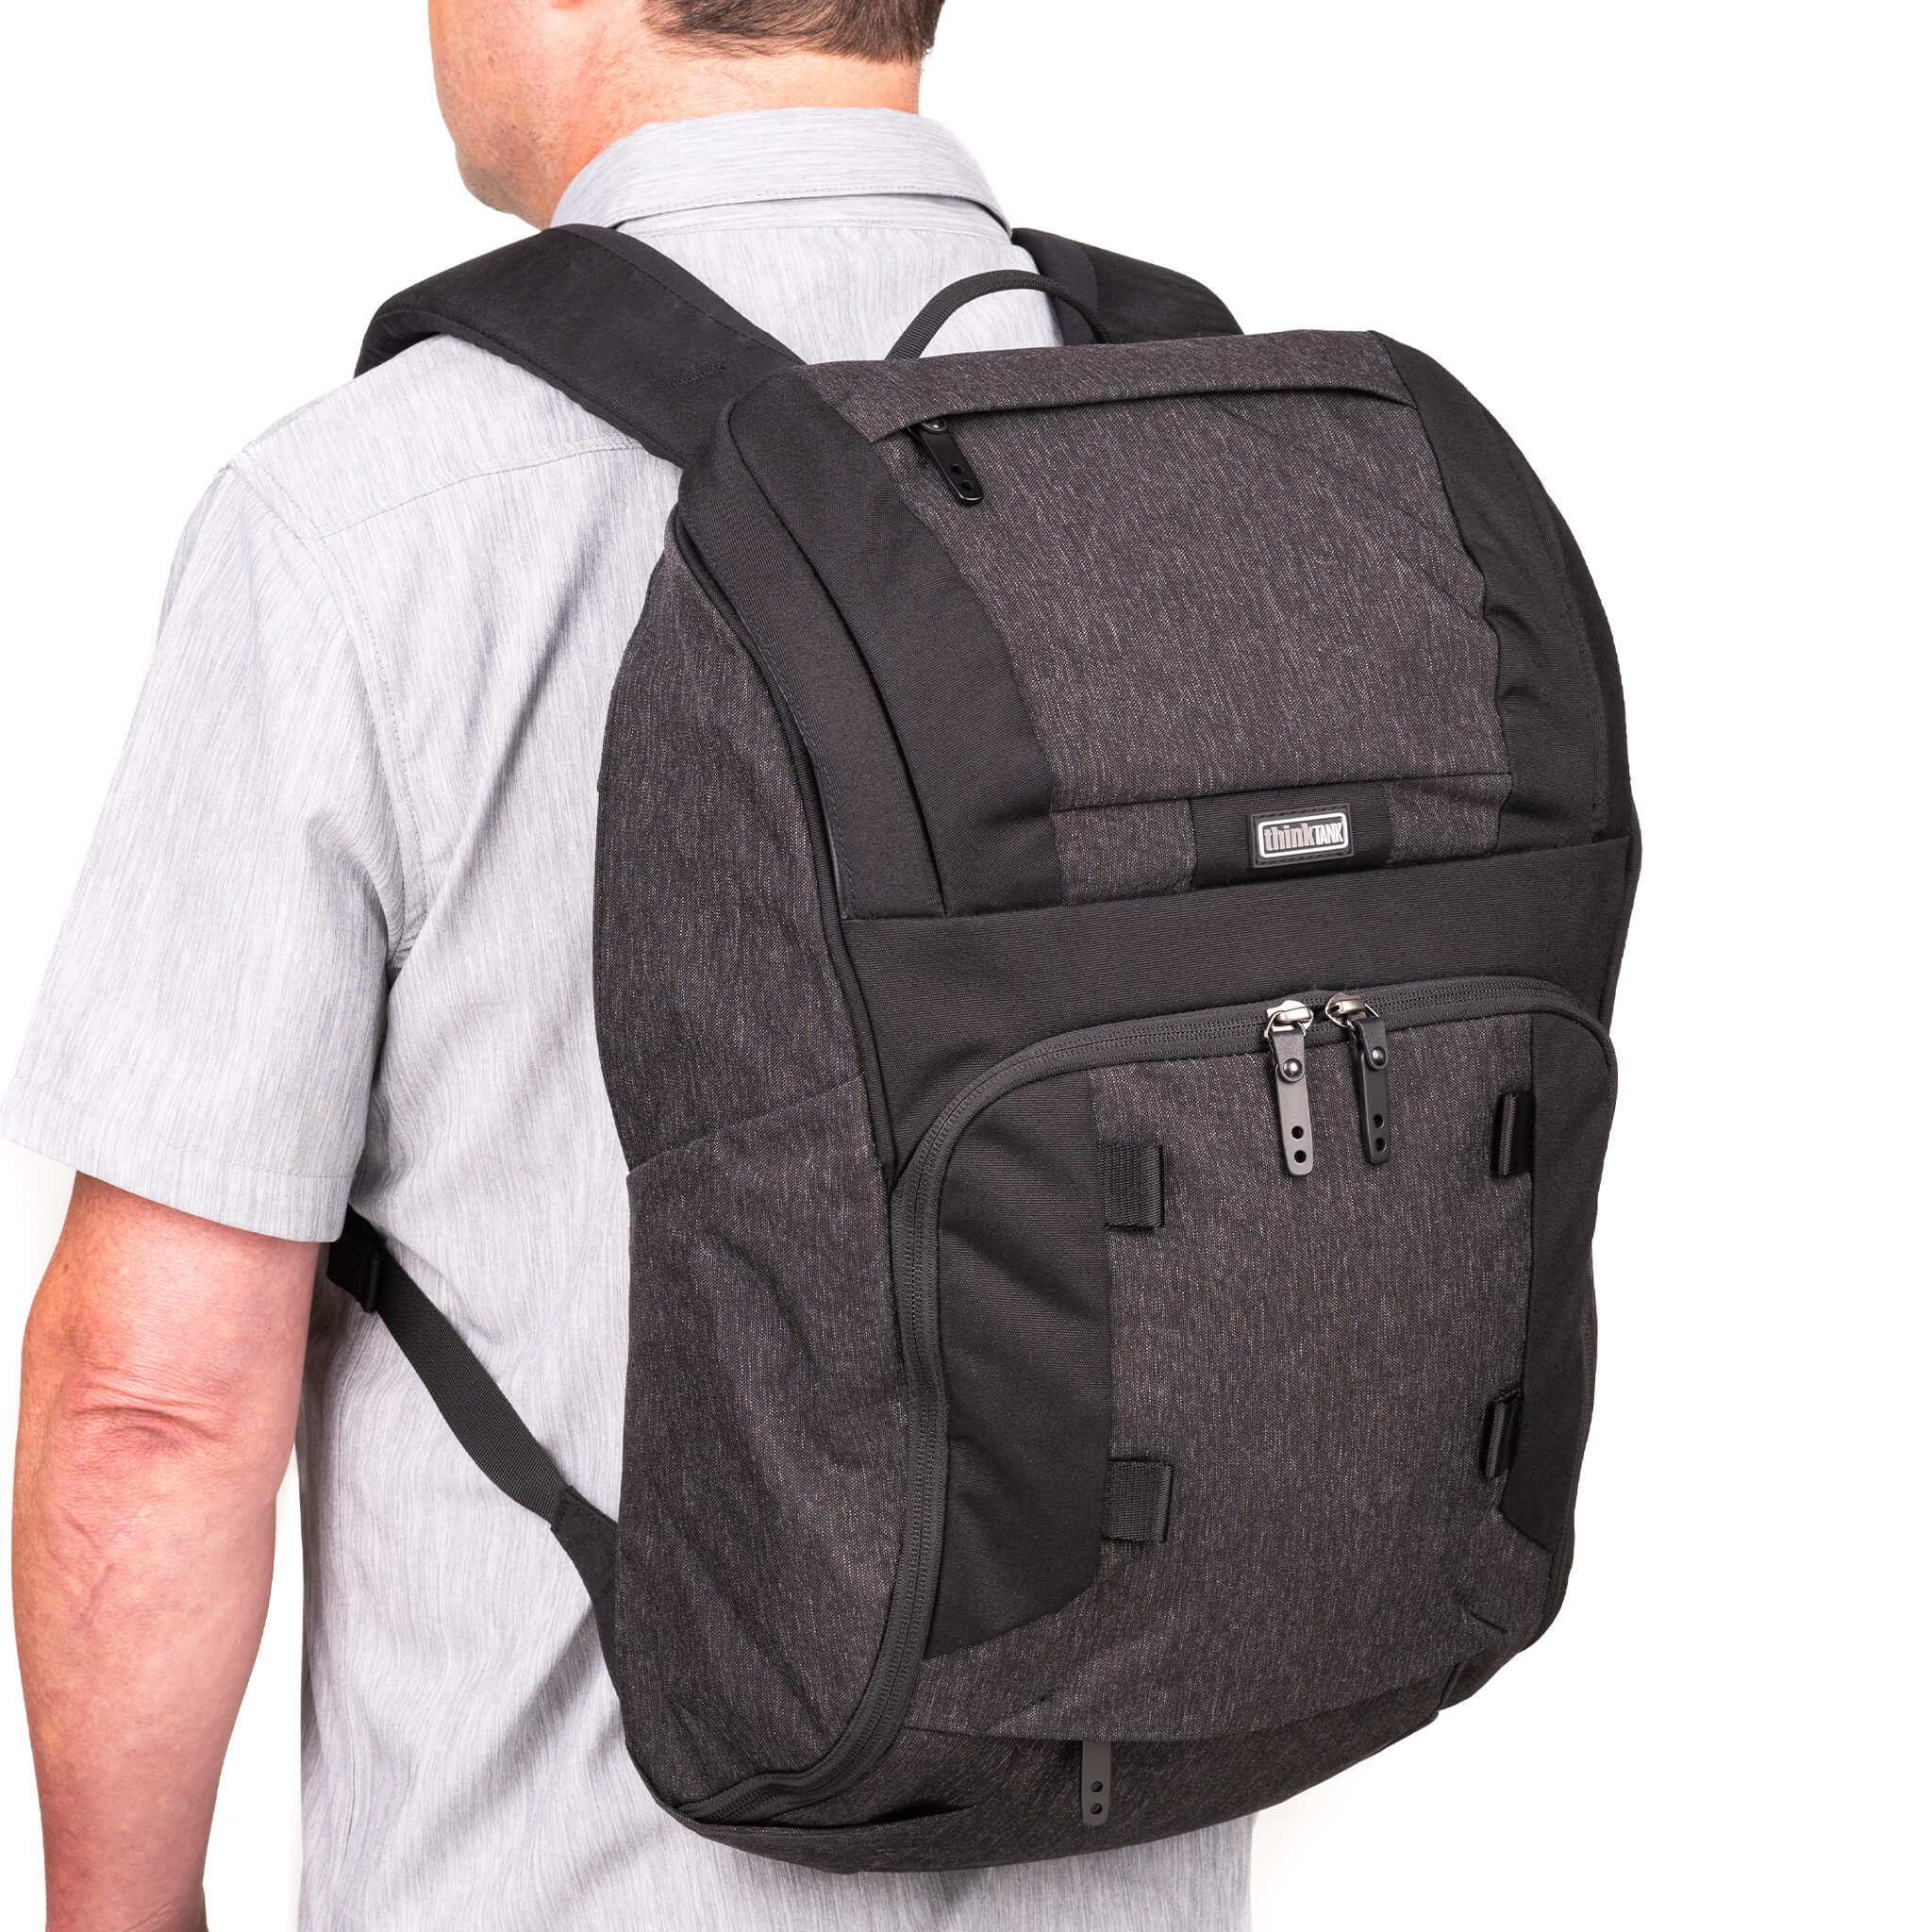 SpeedTop® 20 Backpack